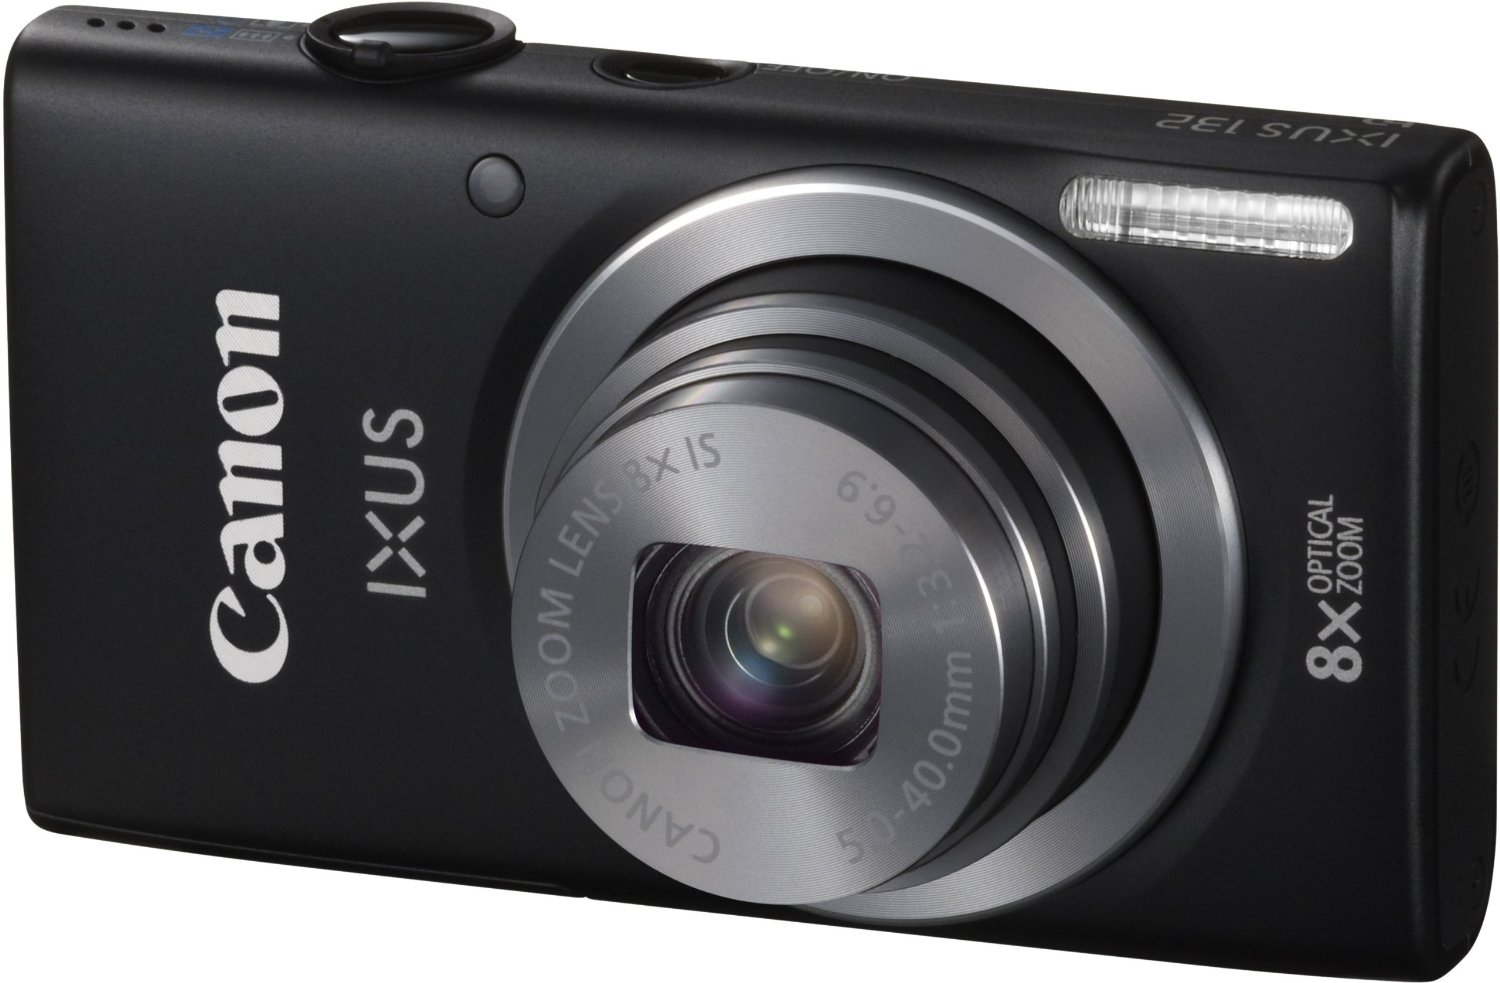 Canon IXUS 145 là dòng máy ảnh giá rẻ phù hợp với những người mới sử dụng